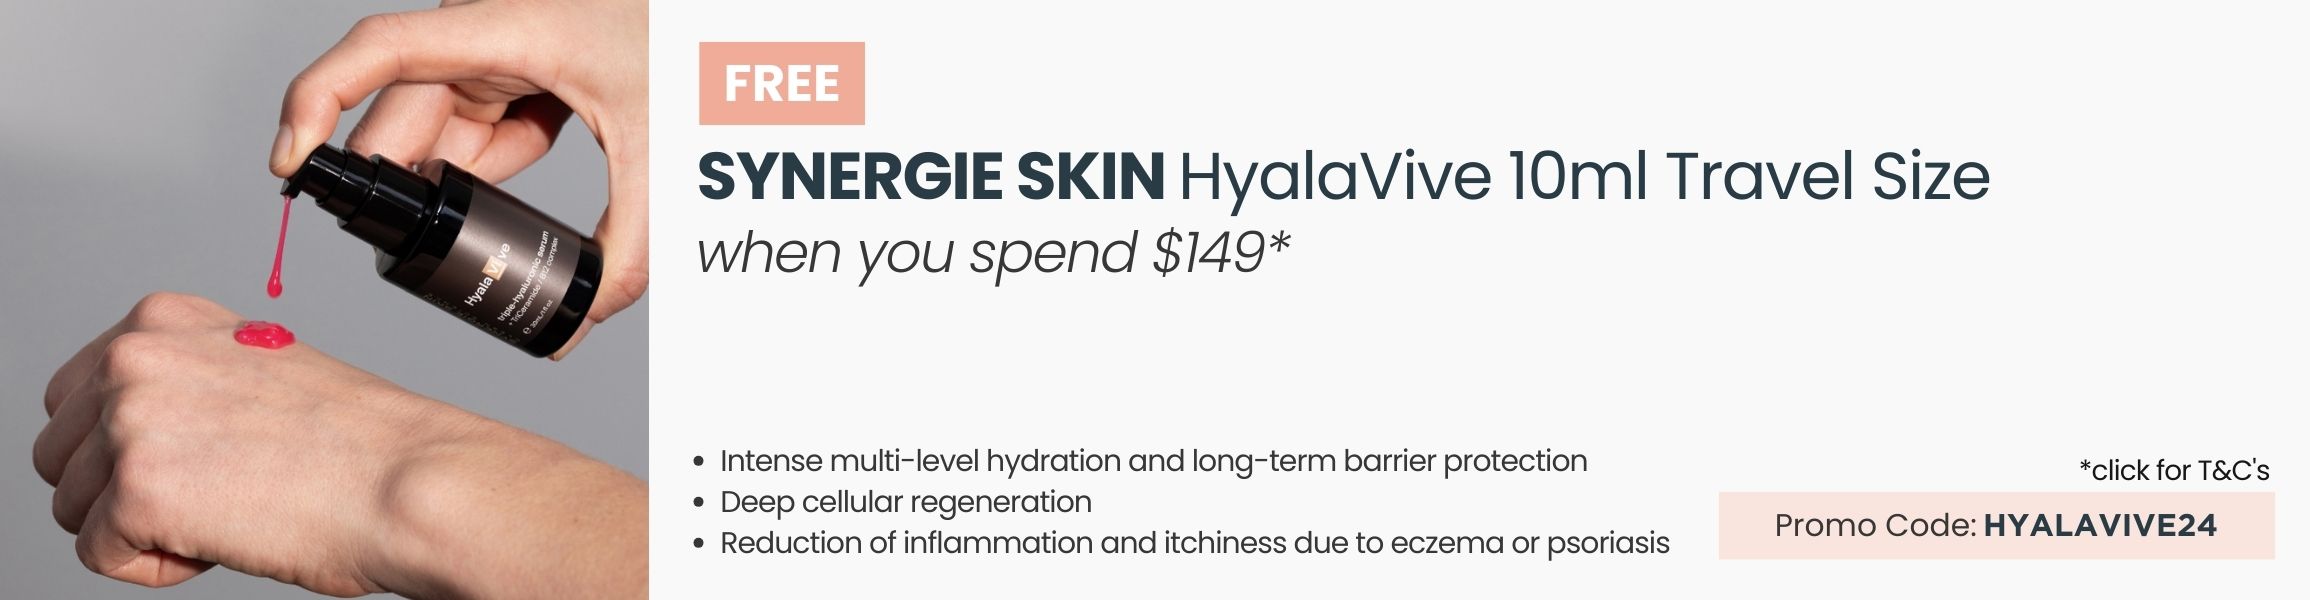 FREE Synergie Skin HyalaVive 10ml Travel Size.  Min spend $149. Promo Code HYALAVIVE24